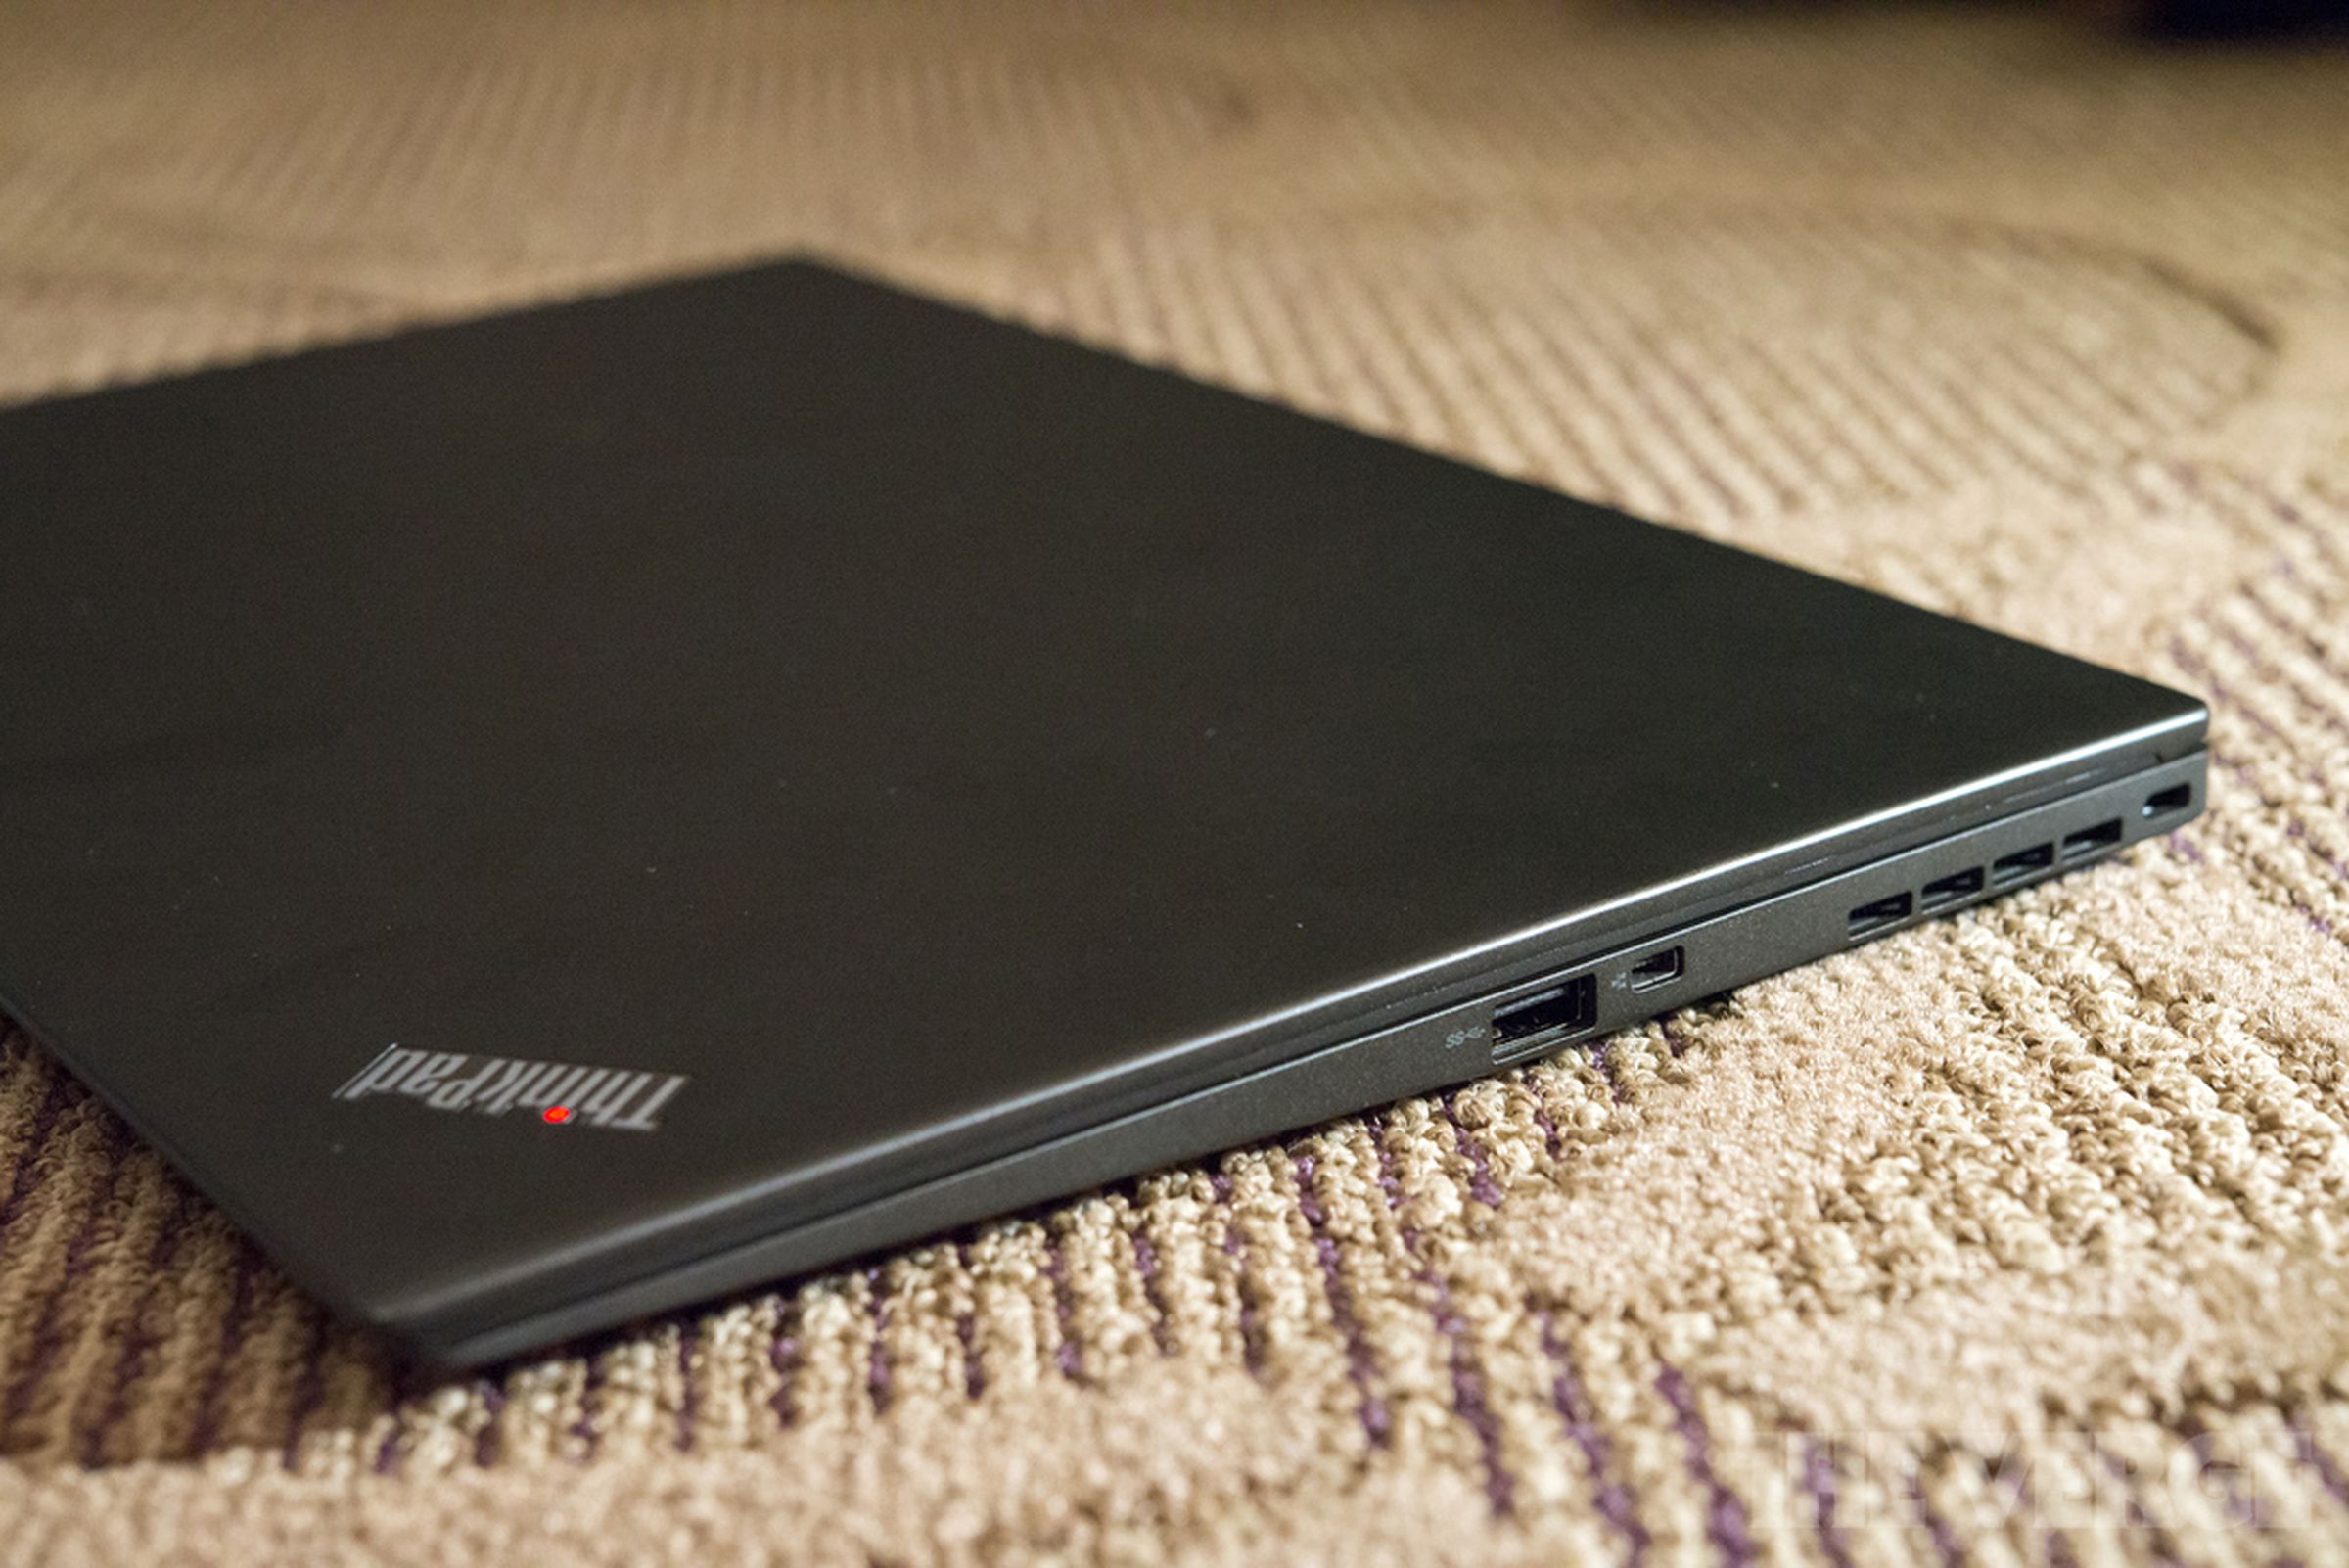 Lenovo Thinkpad X1 Carbon hands-on photos